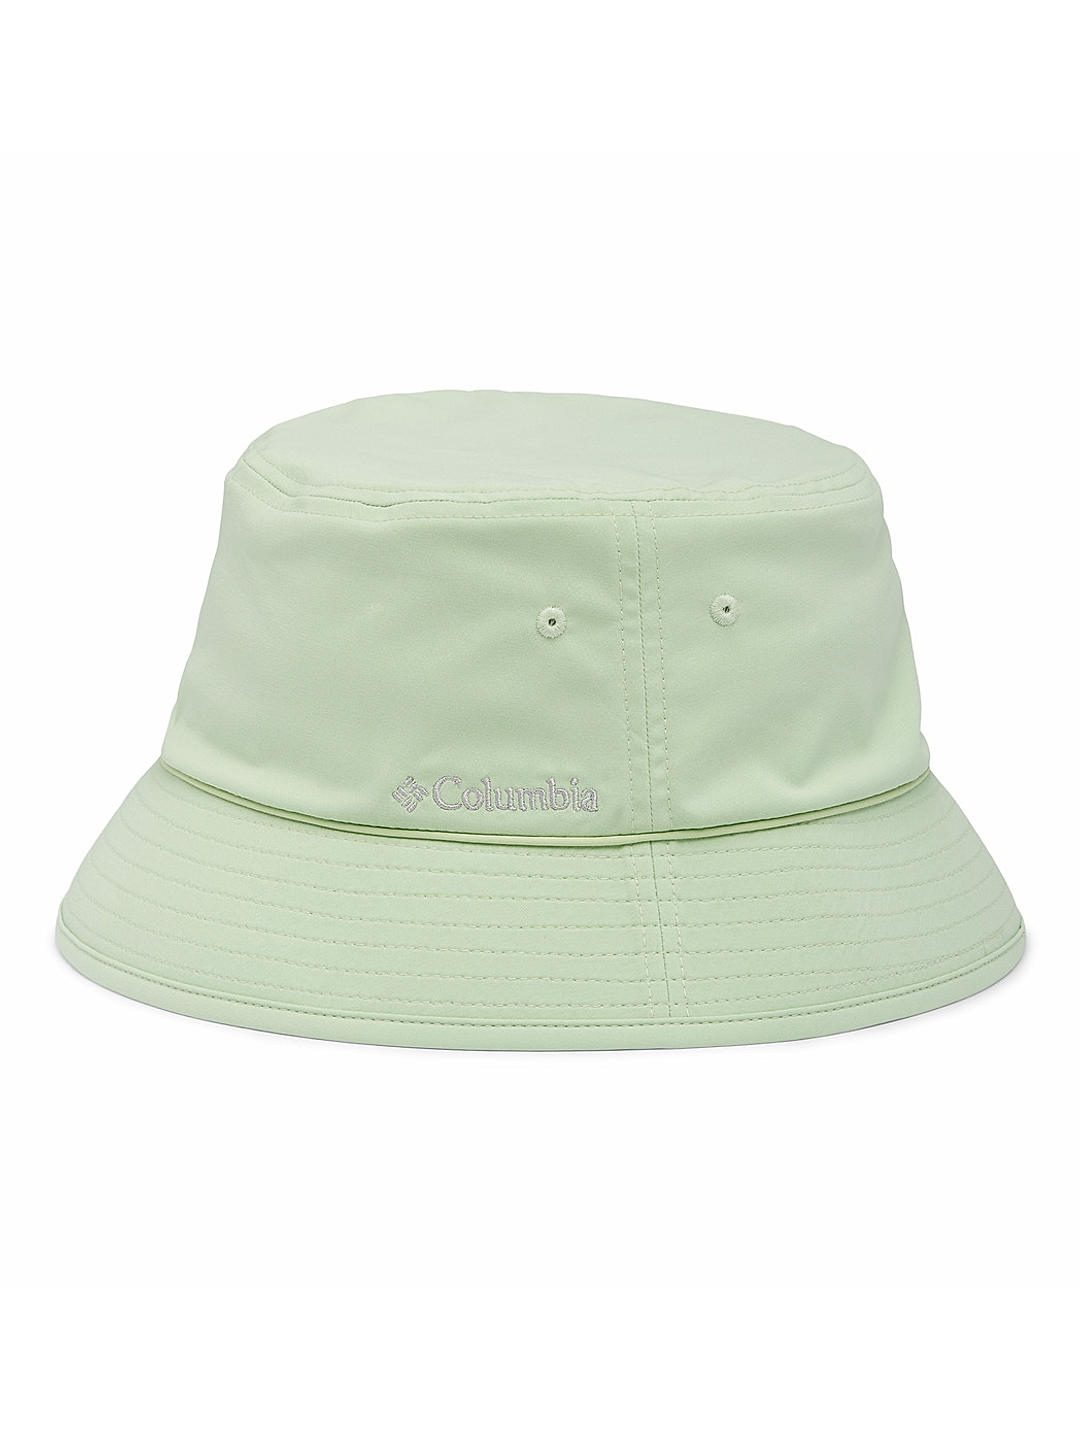 Columbia Unisex Green Pine Mountain Bucket Hat (Sun Protection)